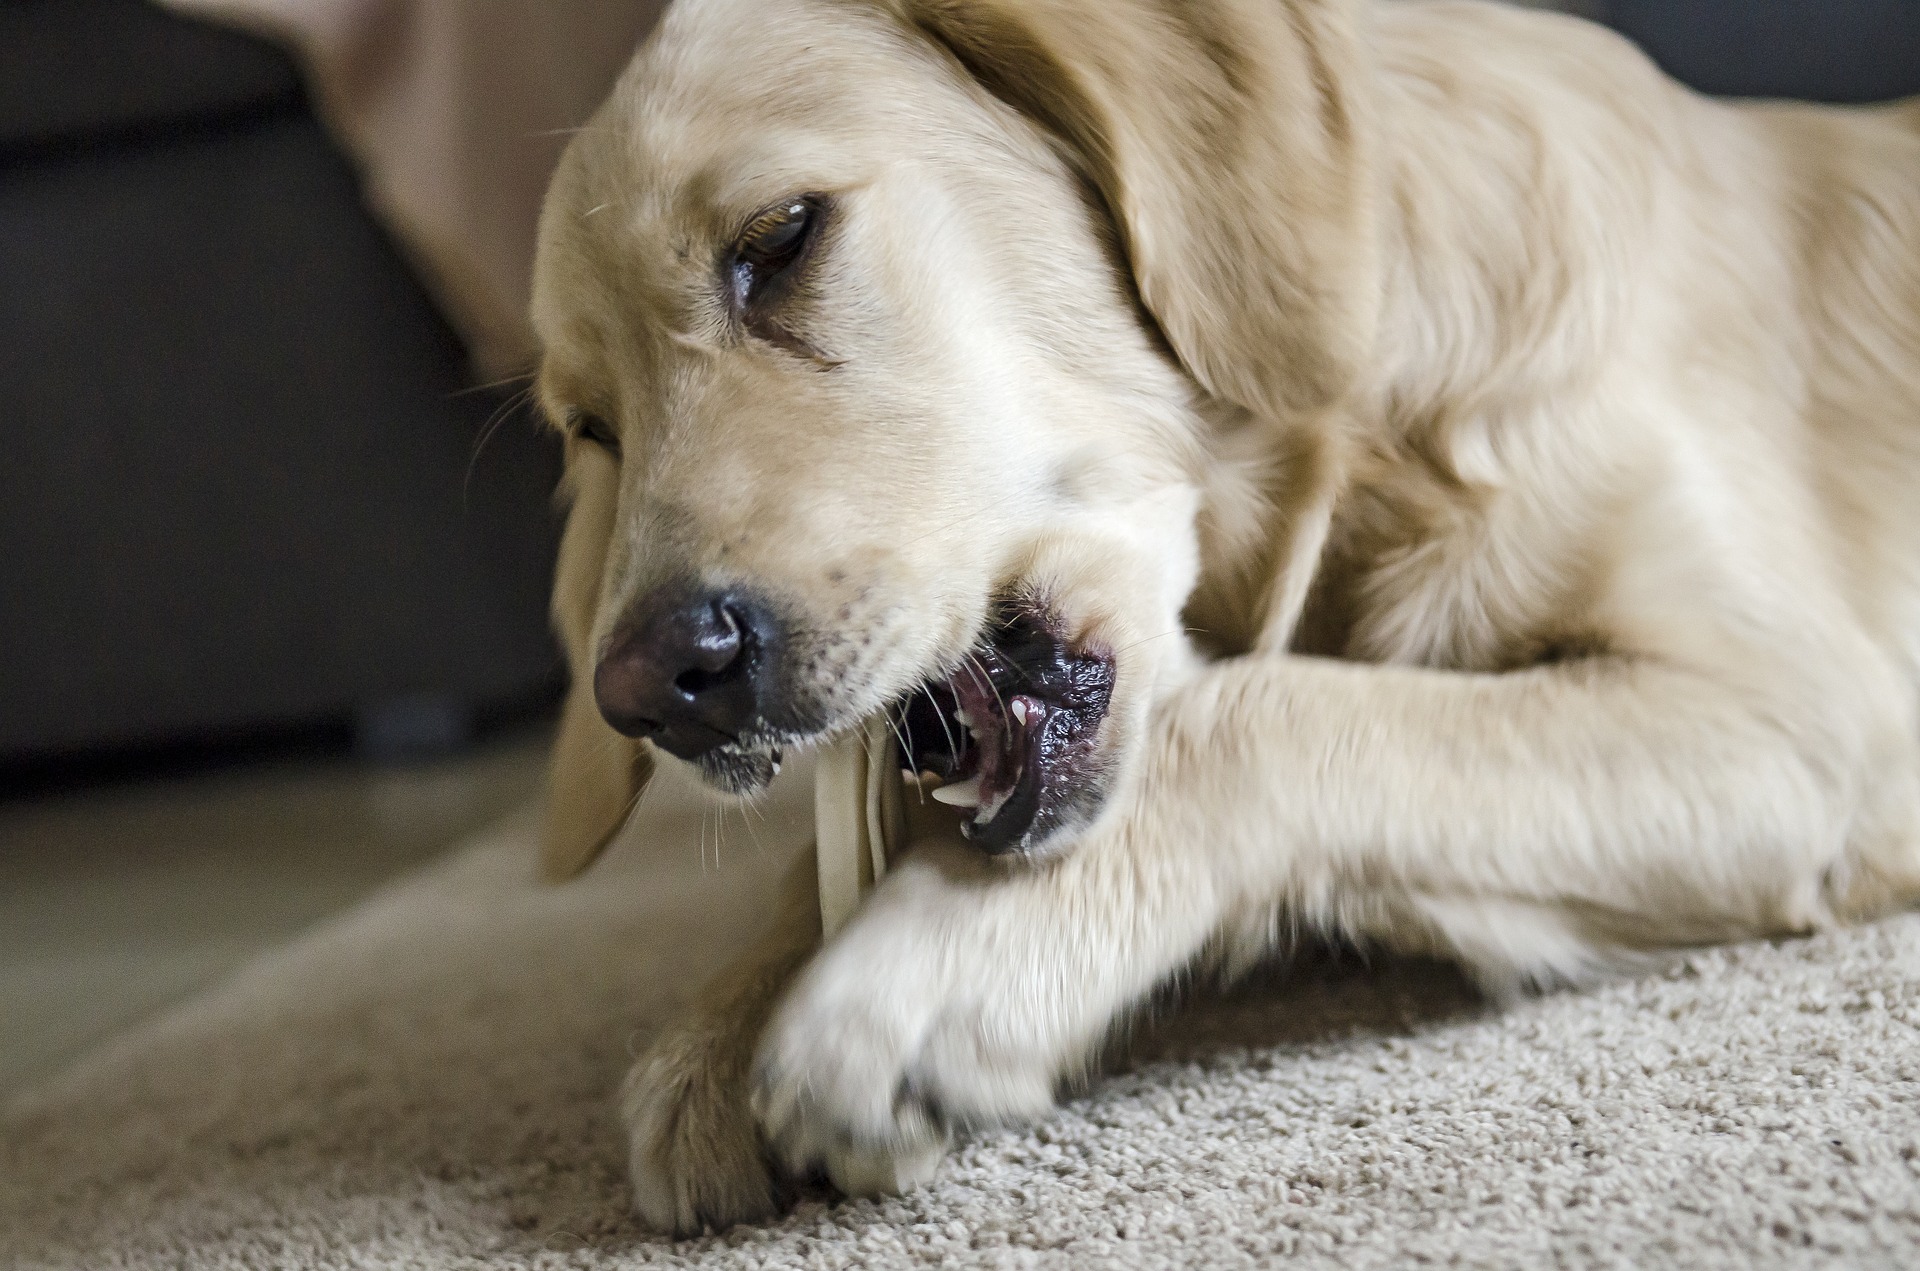 Um die Bildung von Zahnstein bei Hunden zu verhindern, muss man sie regelmäßig putzen und auf eine gute Ernährung achten. Natürliche Kauartikel für Hunde sind nützlich.